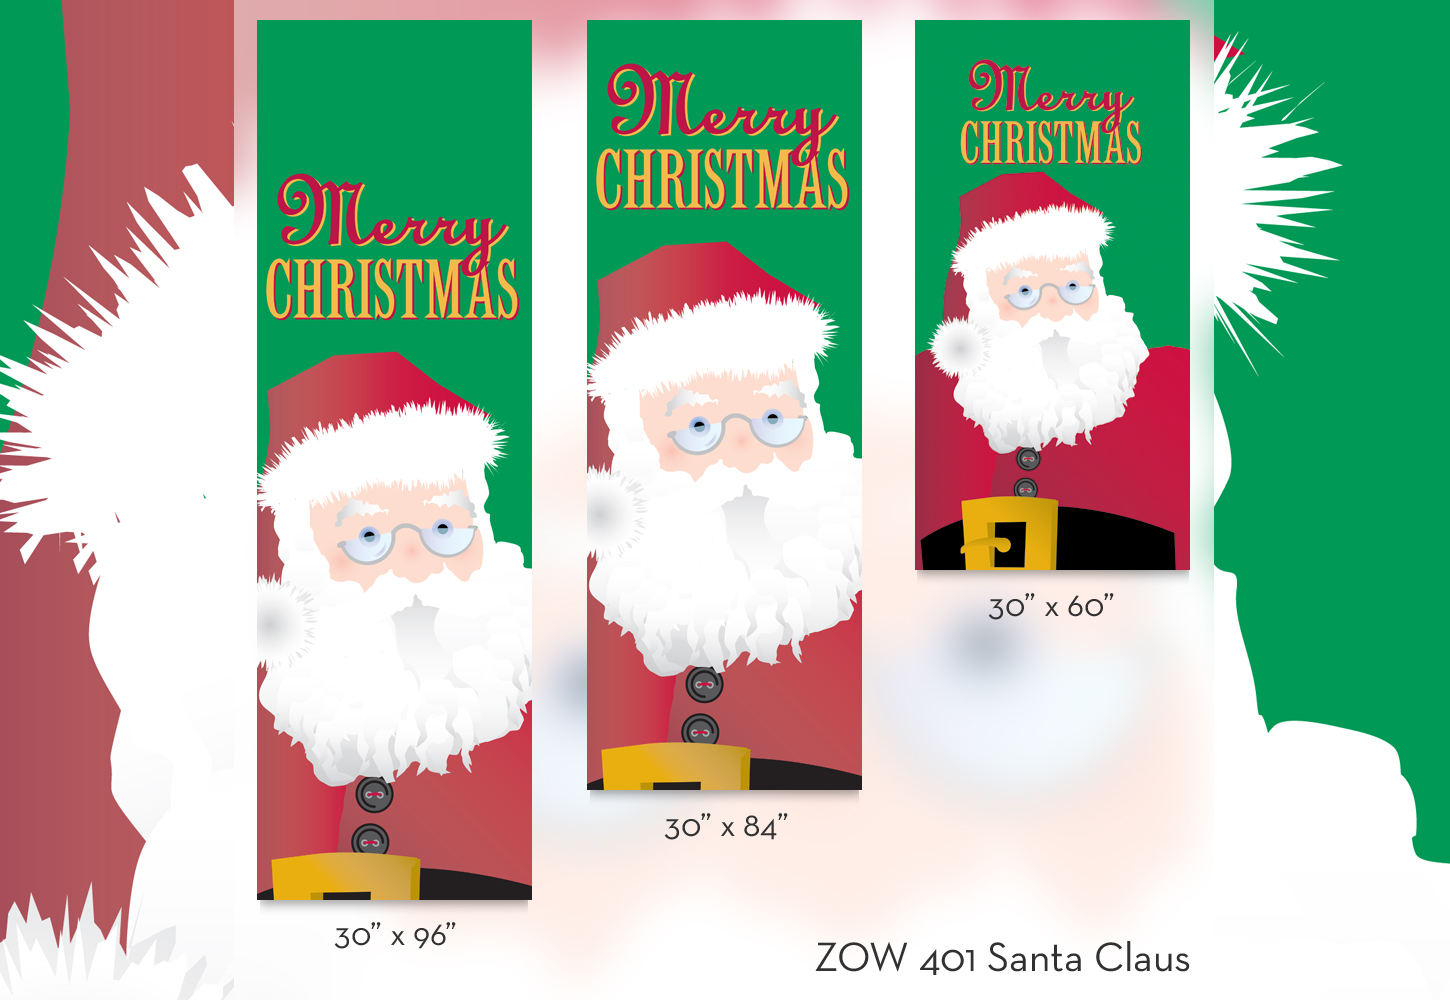 ZOW 401 Santa Claus